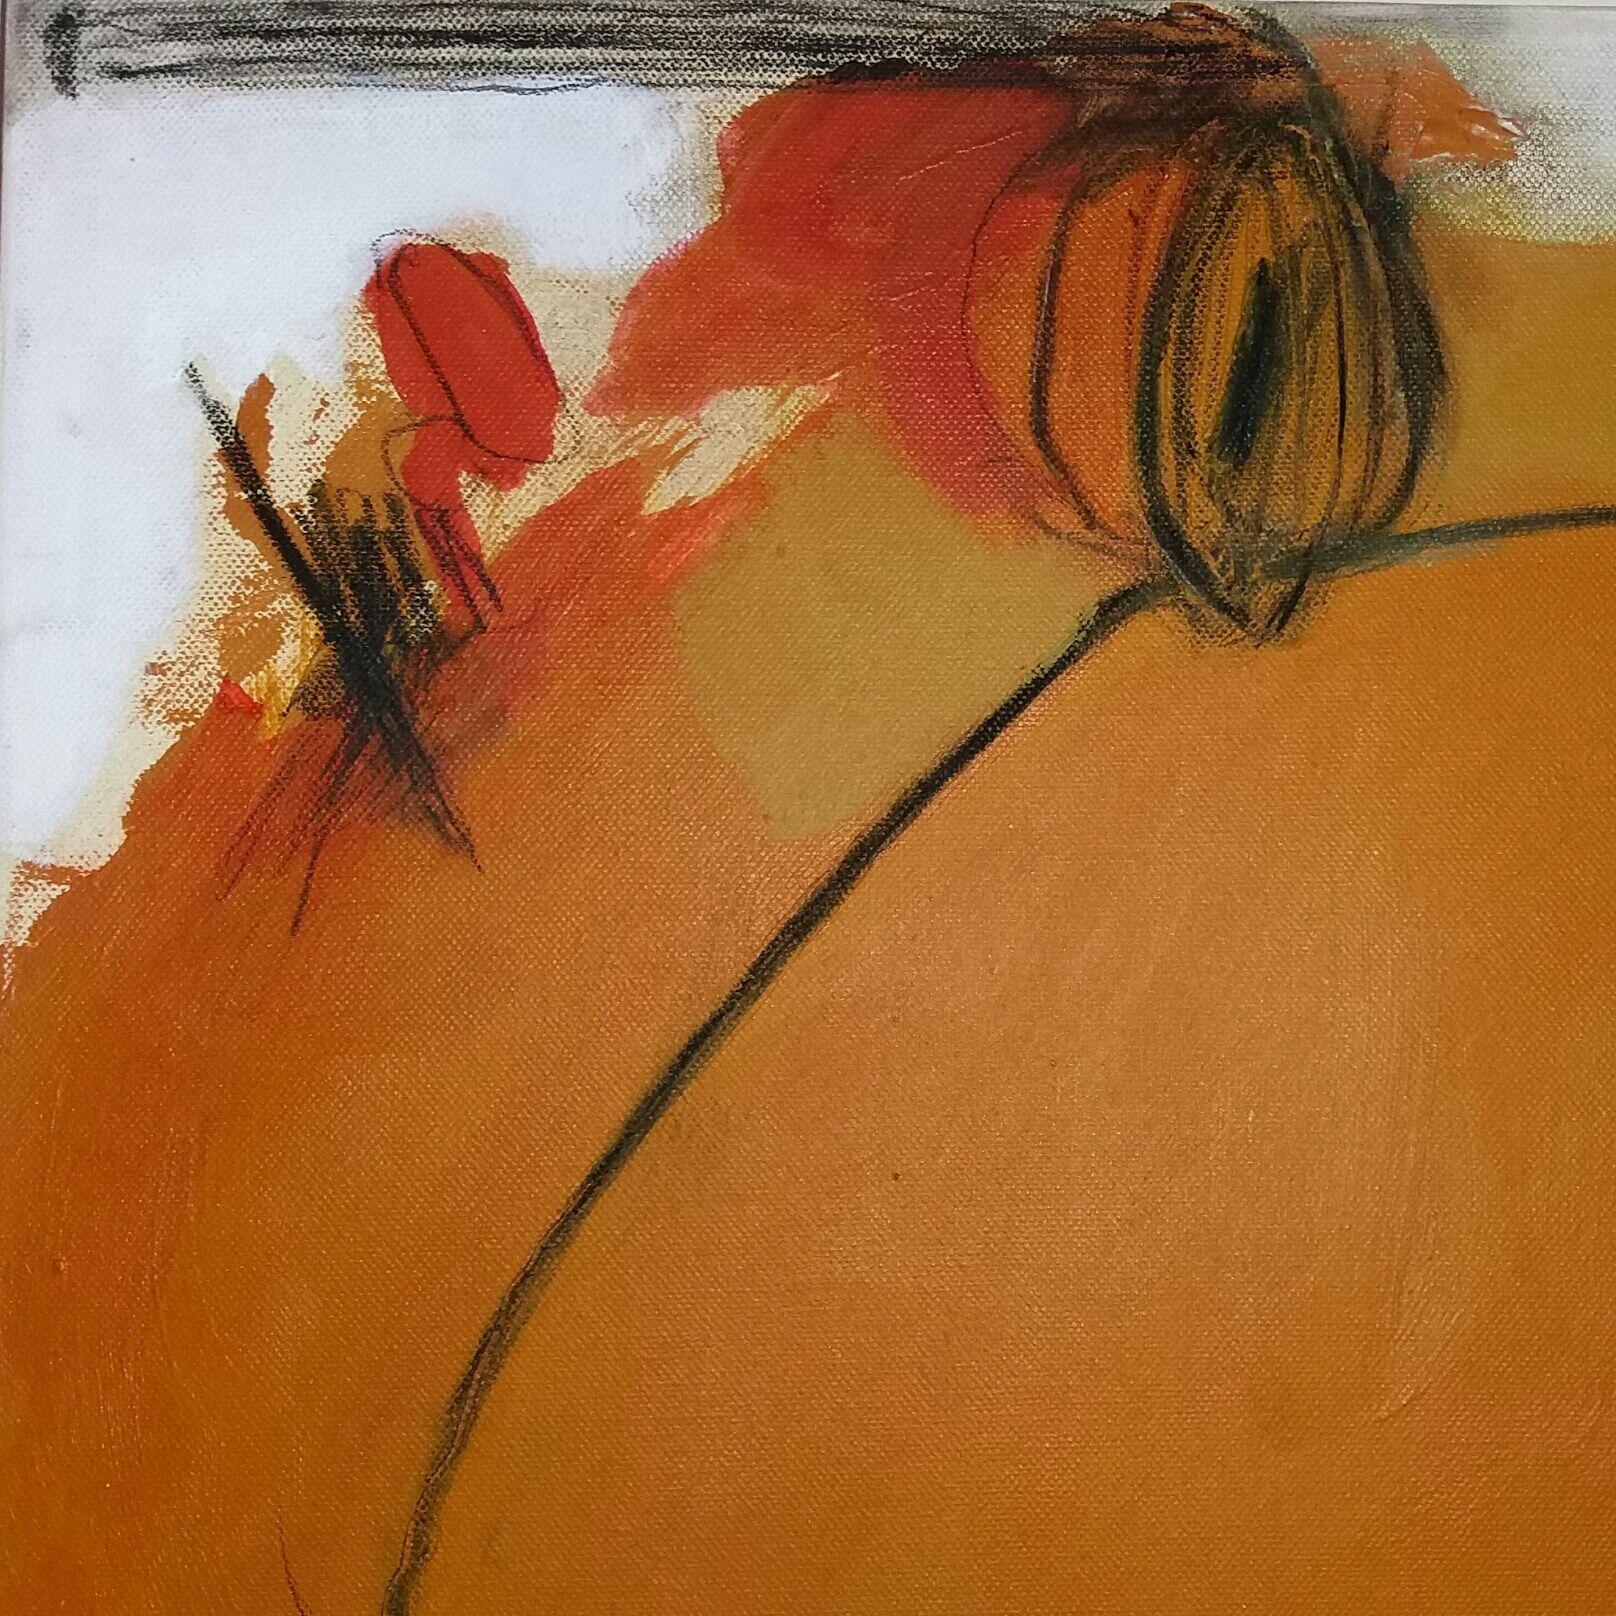 Orange Experience, Mixed Media on Canvas - Abstract Mixed Media Art by Andrea Rowbotham